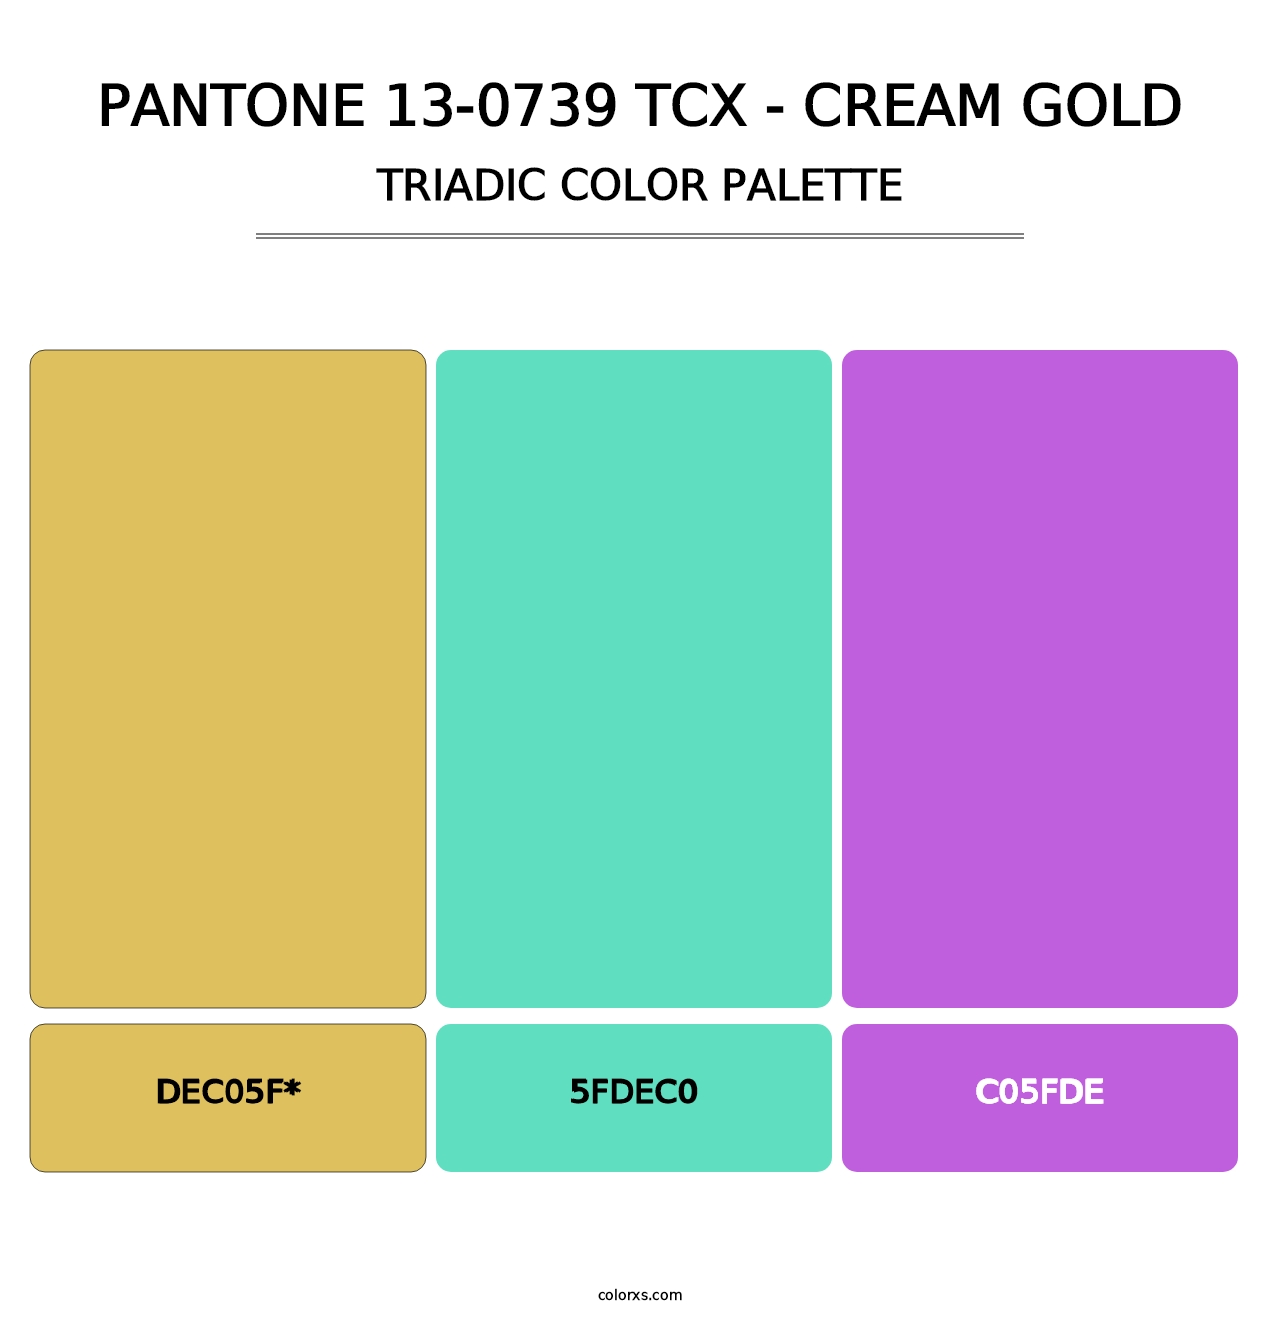 PANTONE 13-0739 TCX - Cream Gold - Triadic Color Palette